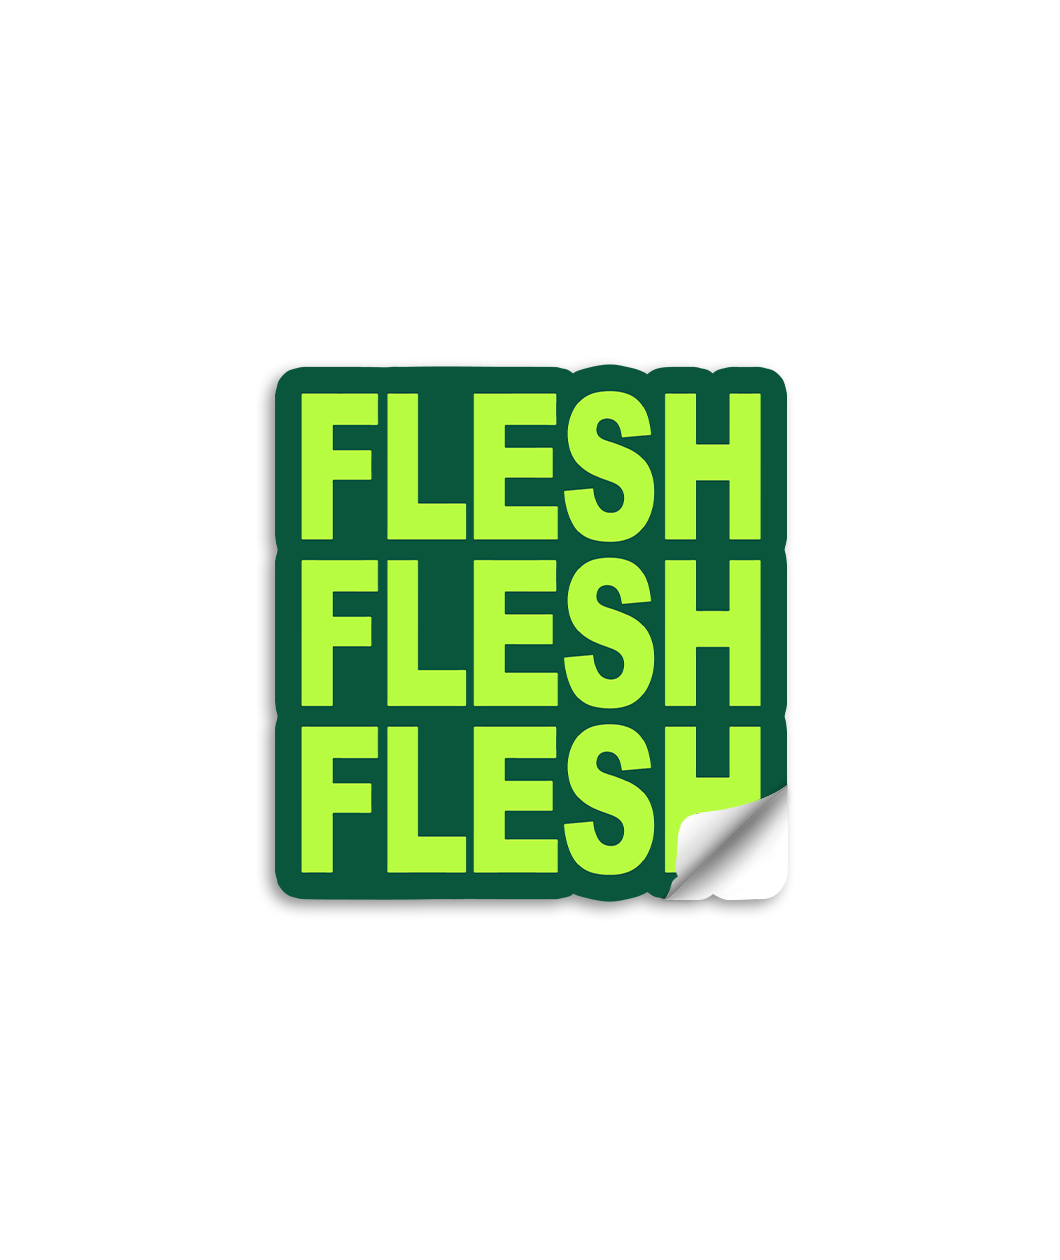 3" vinyl die cut sticker with bold block text. A green sticker with neon green text says, "FLESH FLESH FLESH".